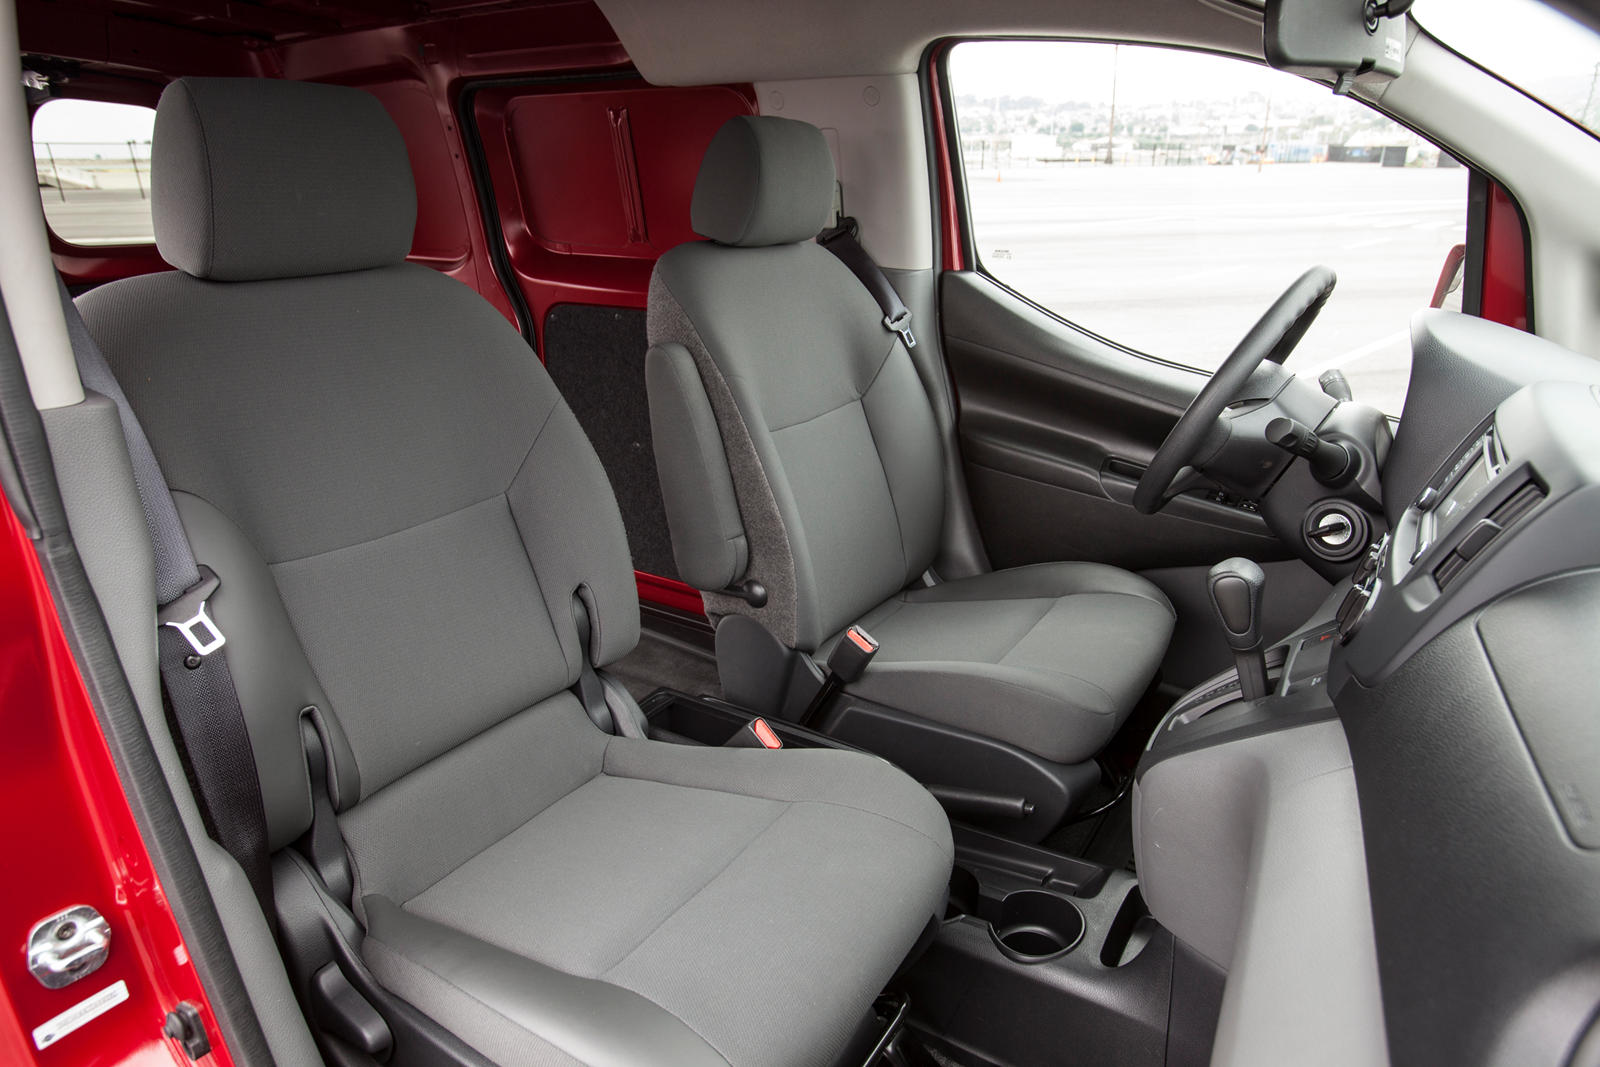 2016 Nissan NV200 Compact Cargo Interior Photos | CarBuzz